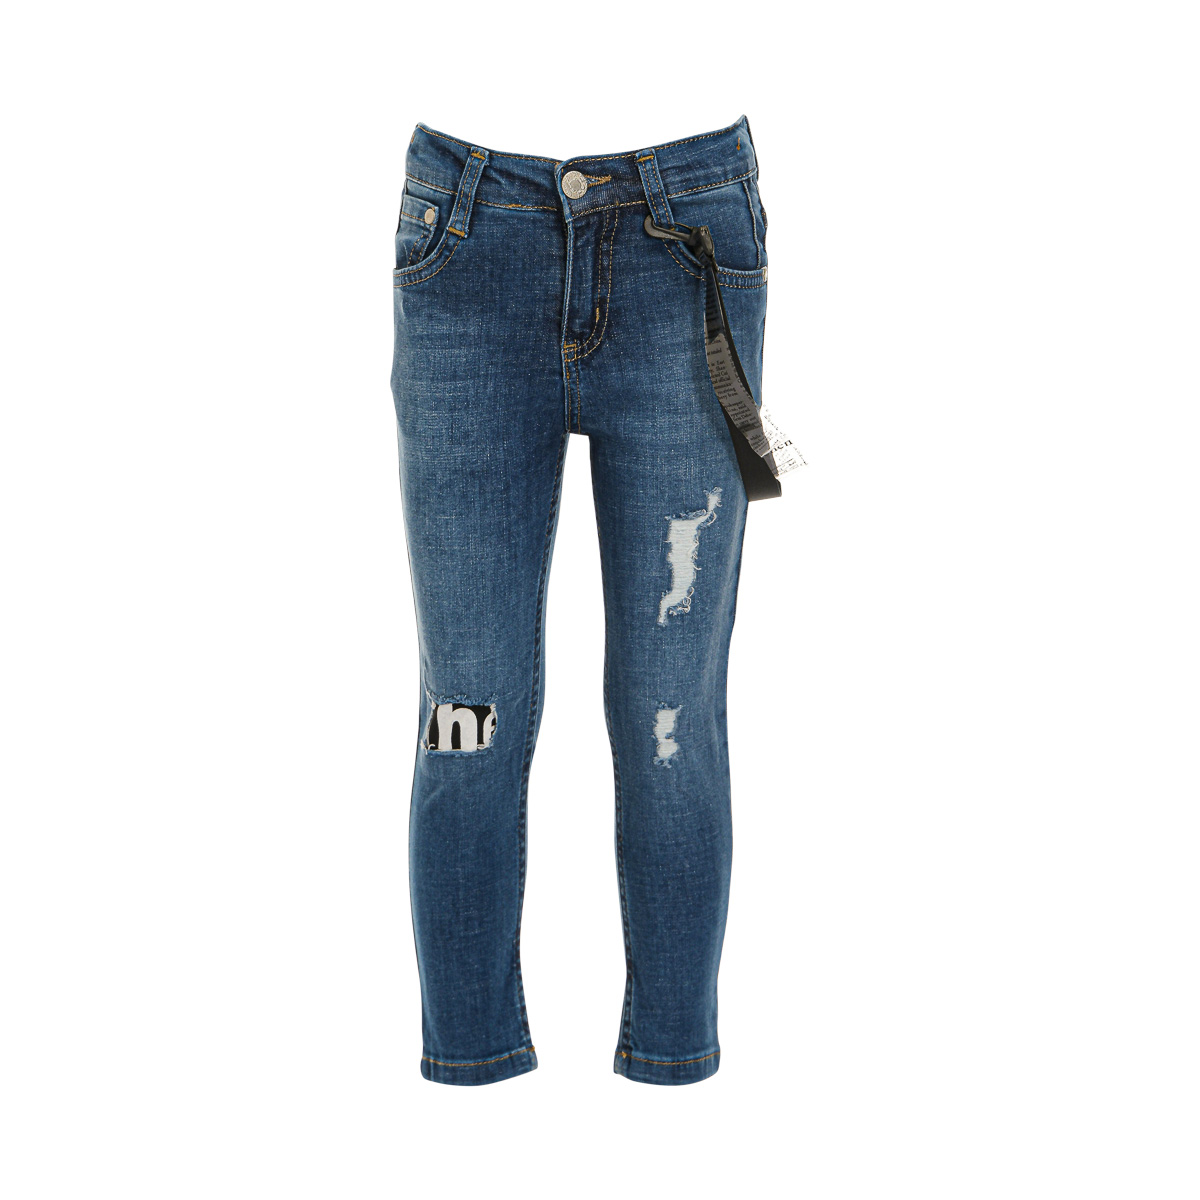 Παιδικά/Boys/Ρούχα/Παντελόνια SAM 0-13 - Παιδικό jean παντελόνι SAM 0-13 μπλε